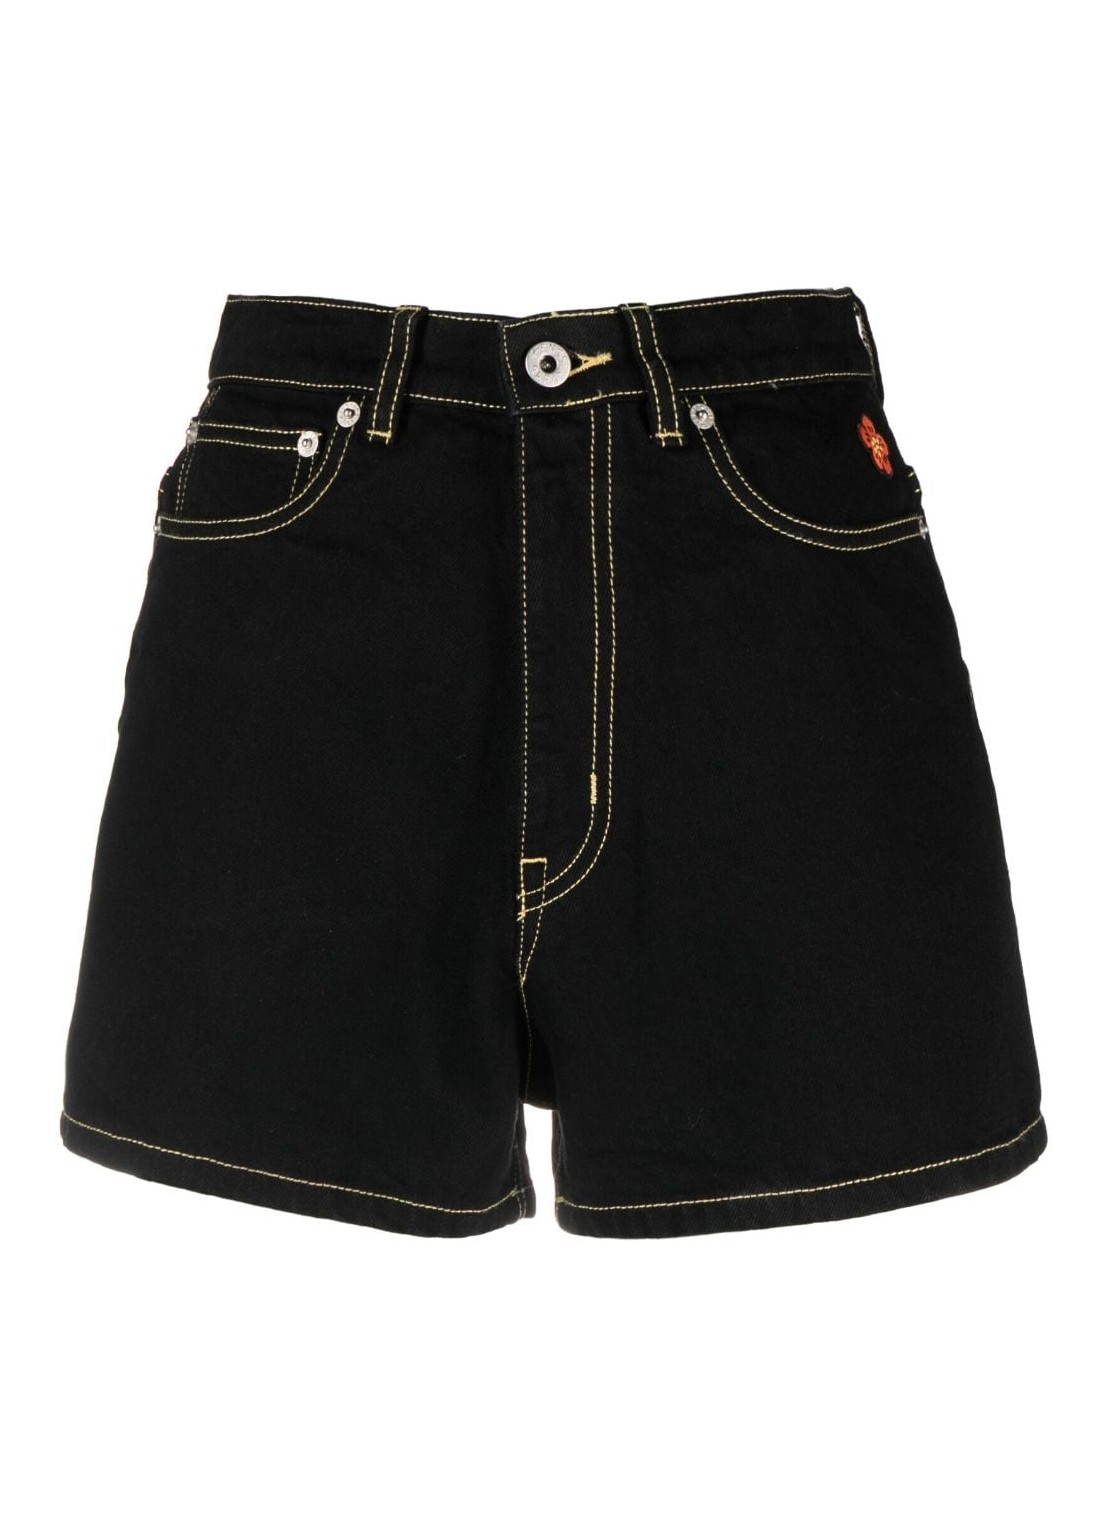 Pantalon corto kenzo short pant woman rinse black denim shorts fd62ds2006c1 bm talla 30
 